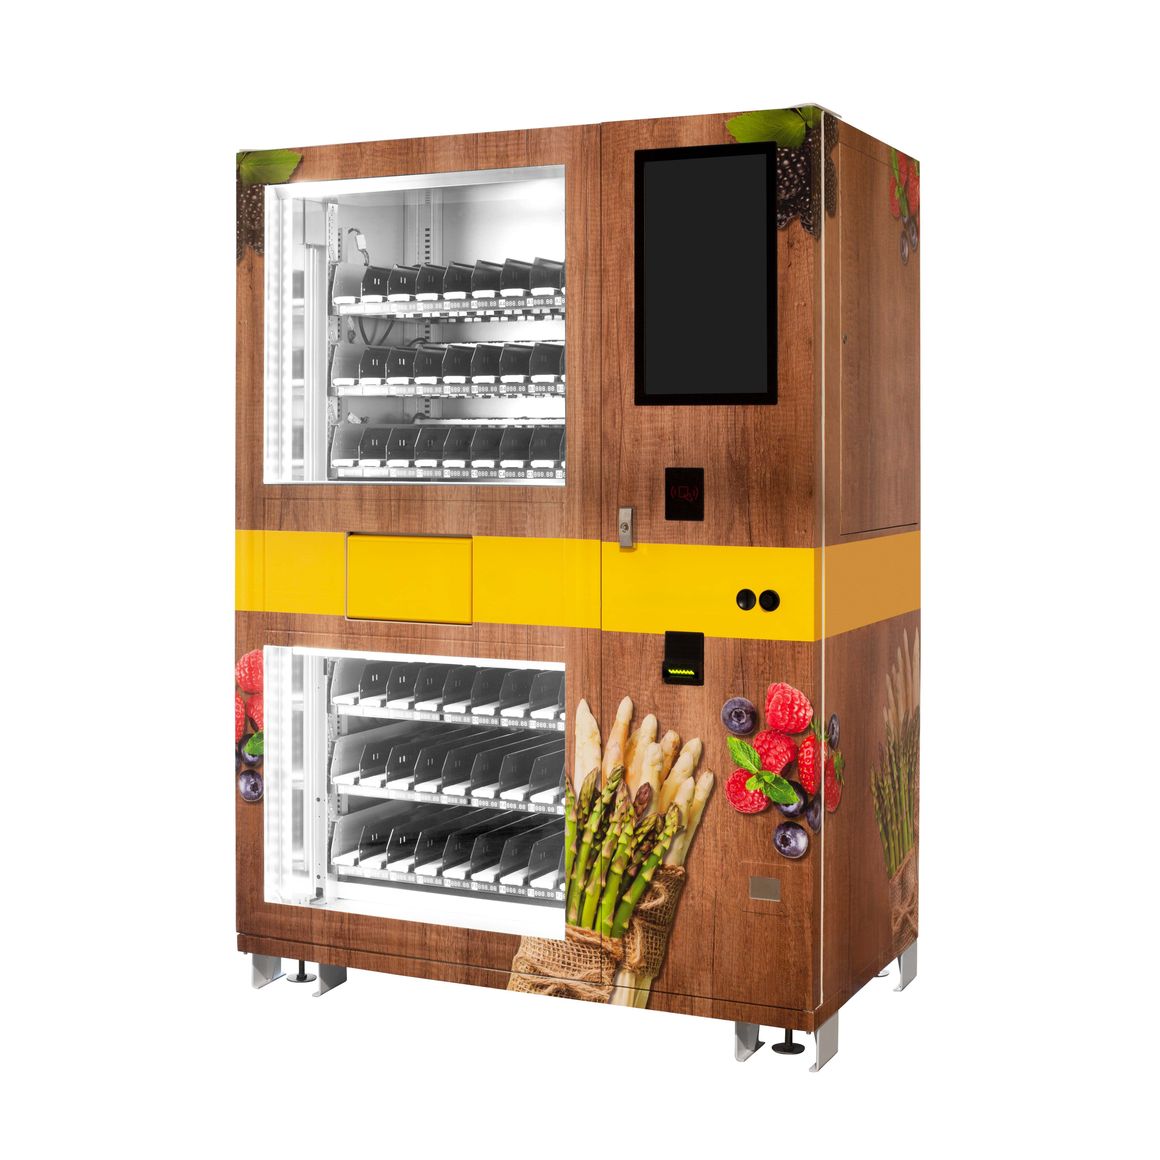 Verkaufsautomat „Lemgo“ als Spargel- und Erdbeerautomat